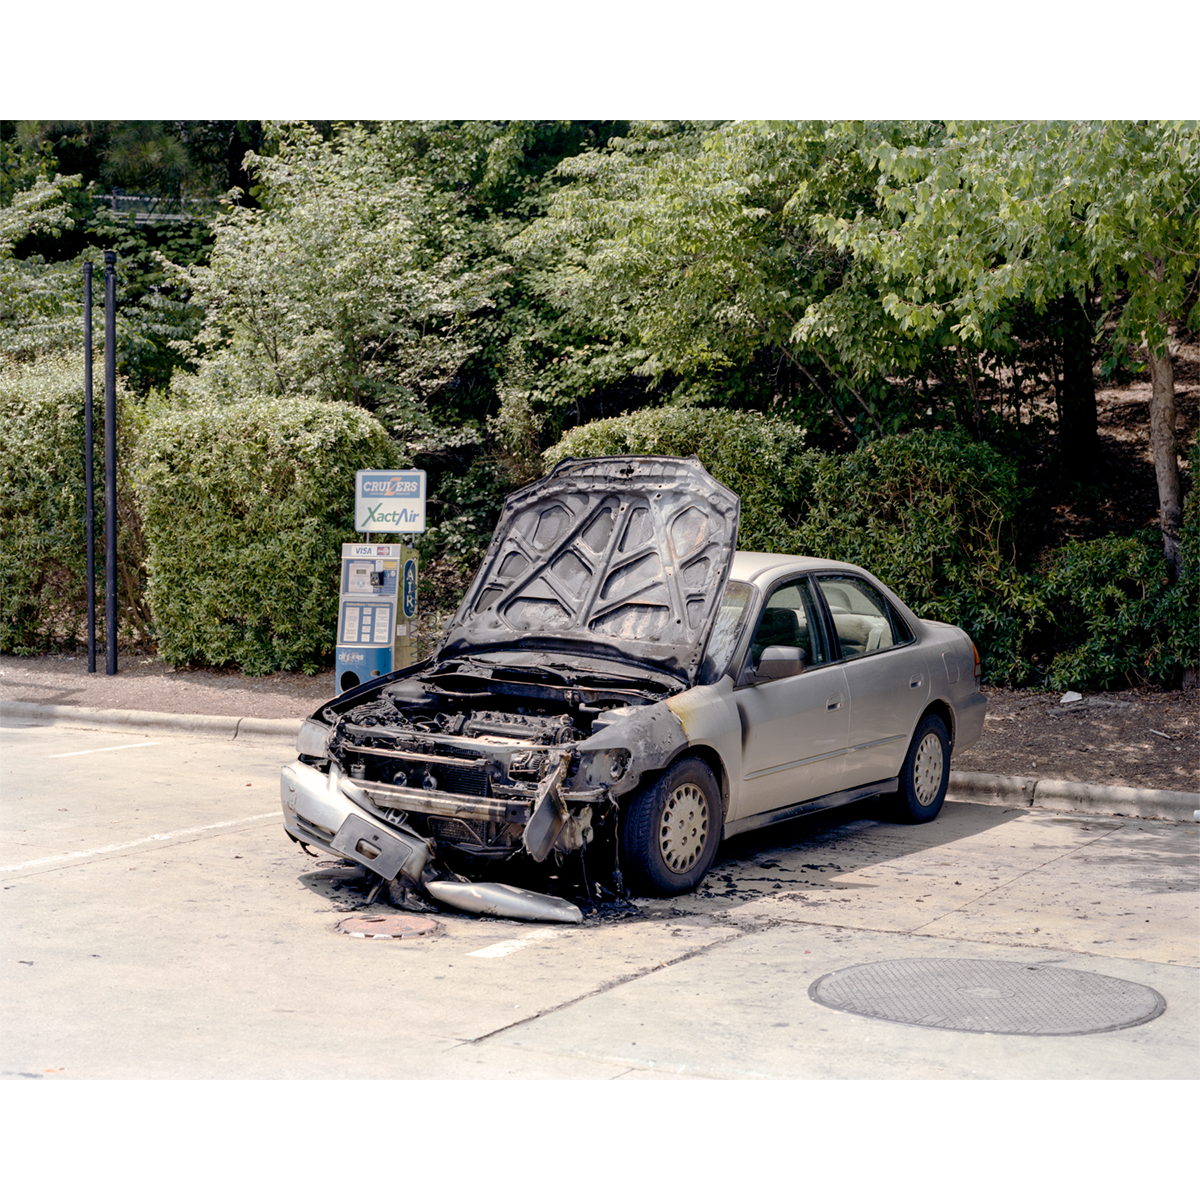 Reid Haithcock "Continual Disaster: Car Fire" Giclee Print